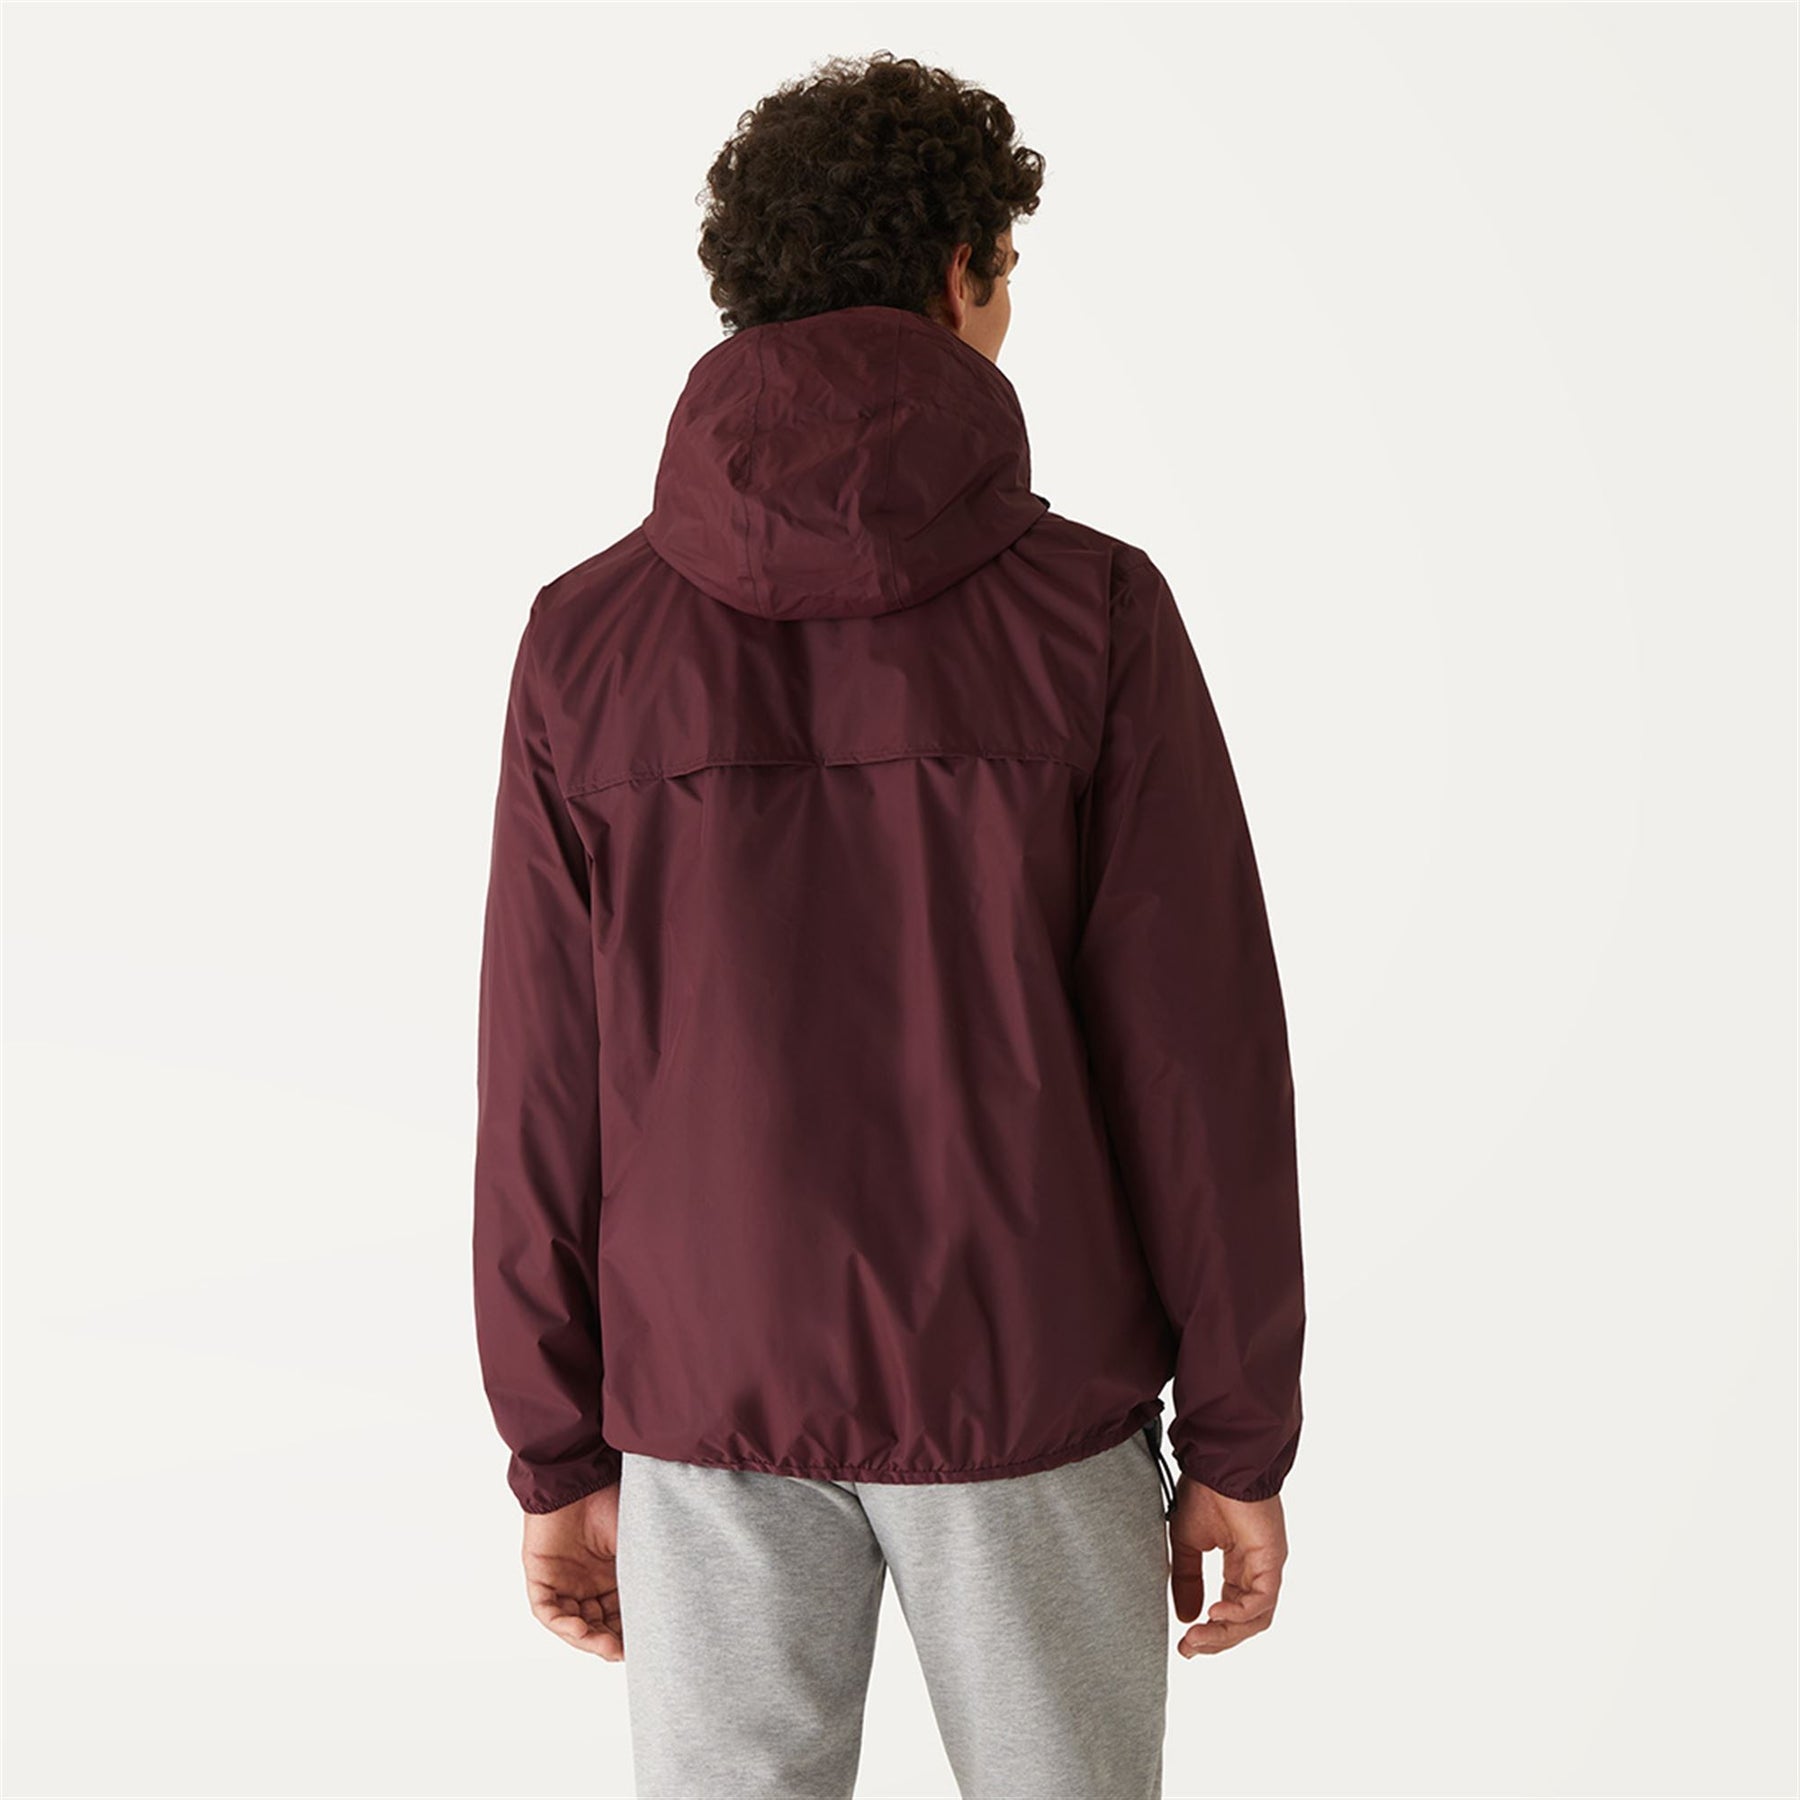 Claude - Unisex Packable Full Zip Waterproof  Rain Jacket in  Red Dk Amaranto